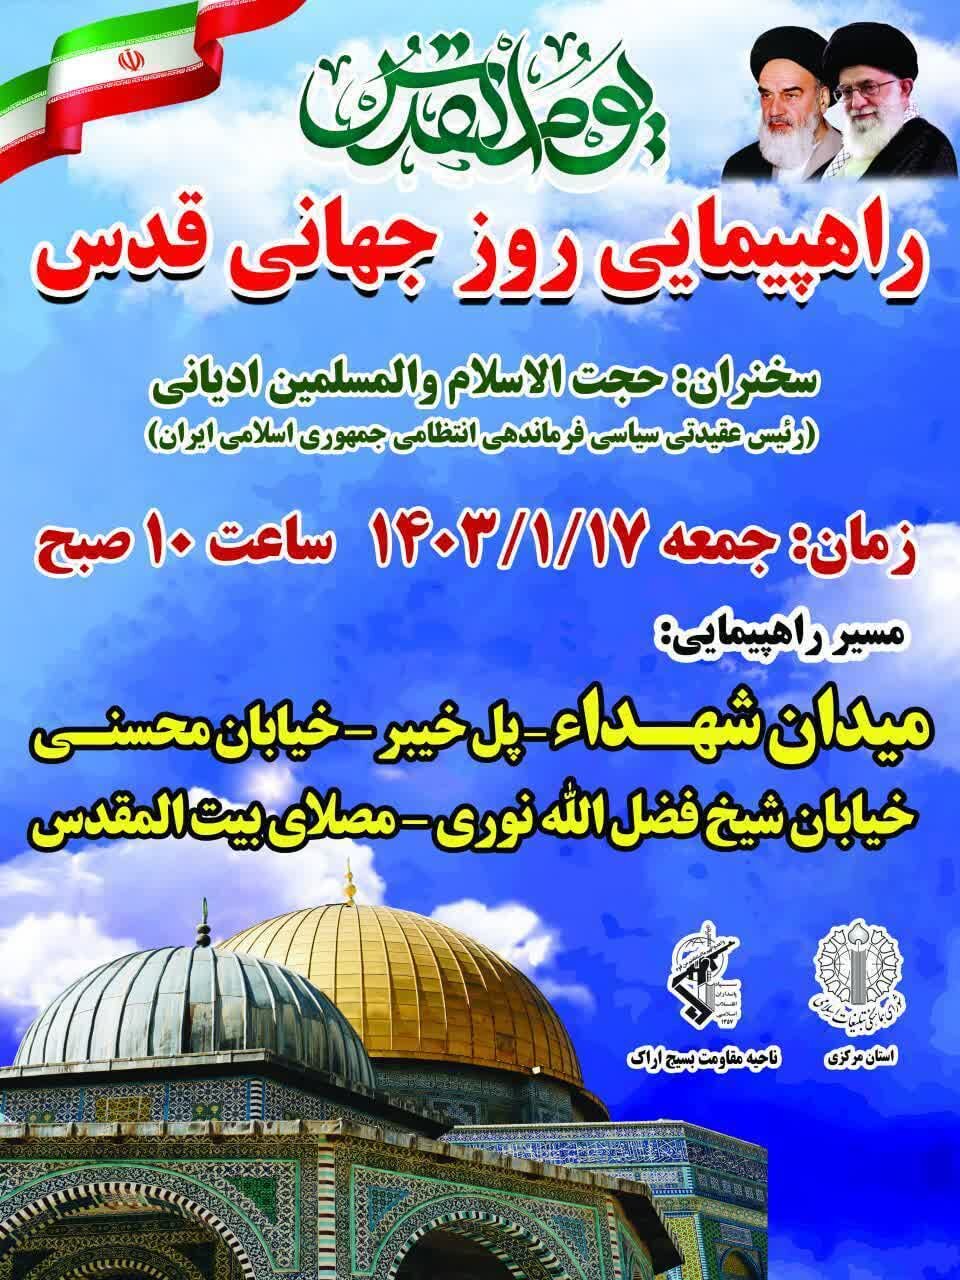 شورای هماهنگی تبلیغات اسلامی از مردم برای حضور در راهپیمایی روز قدس دعوت کرد